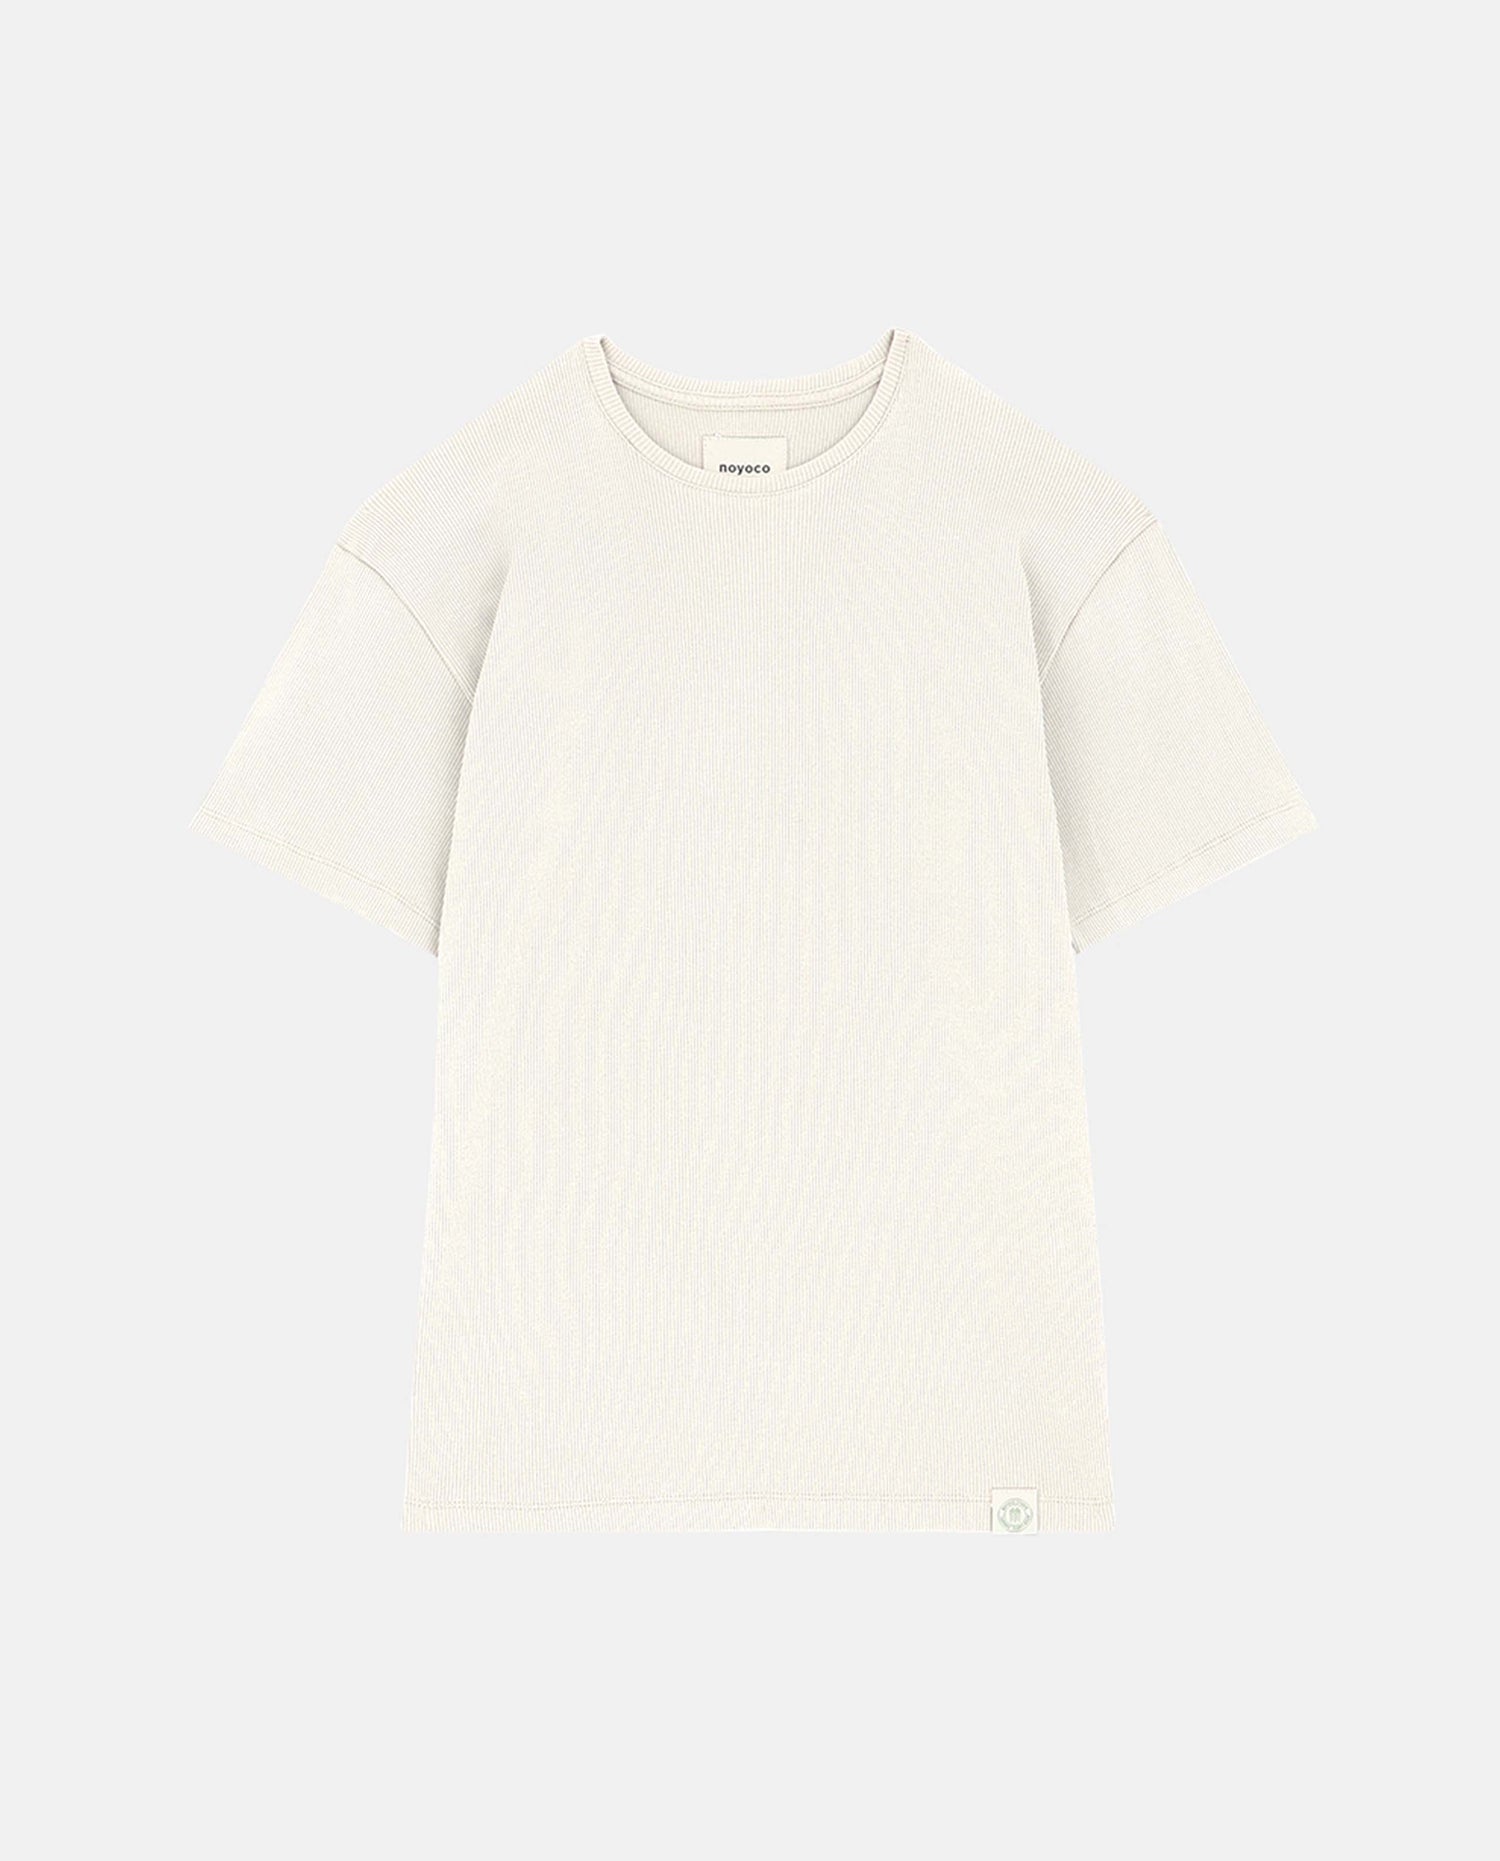 marché commun noyoco femme t-shirt manches courtes gobi coton biologique côtelé écru